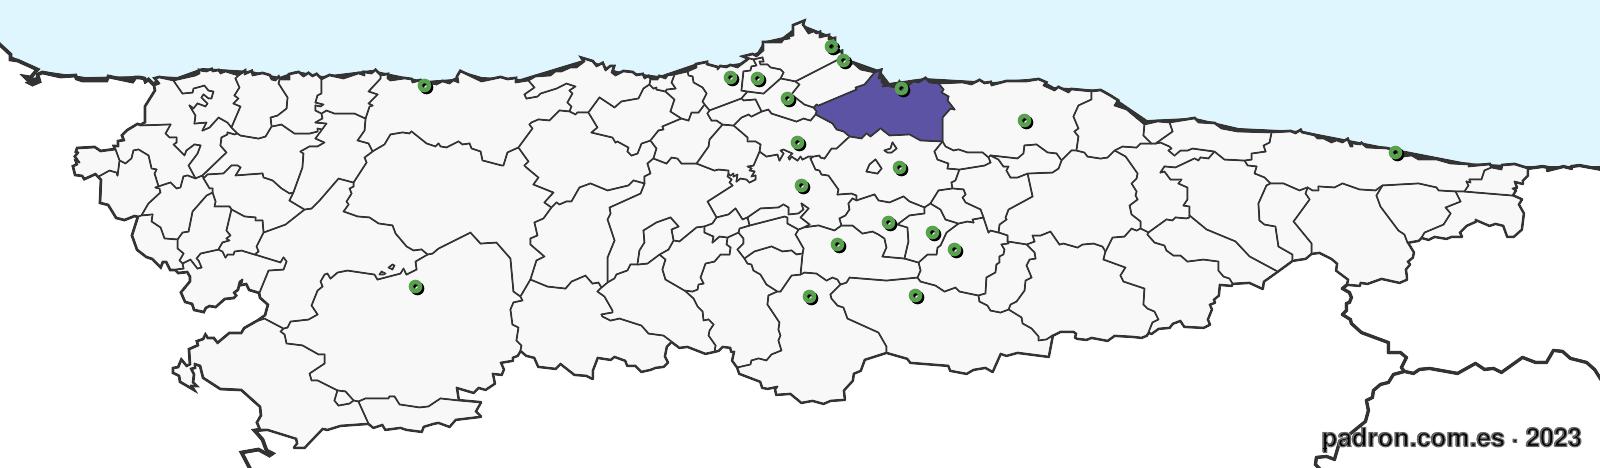 eritreos en asturias.